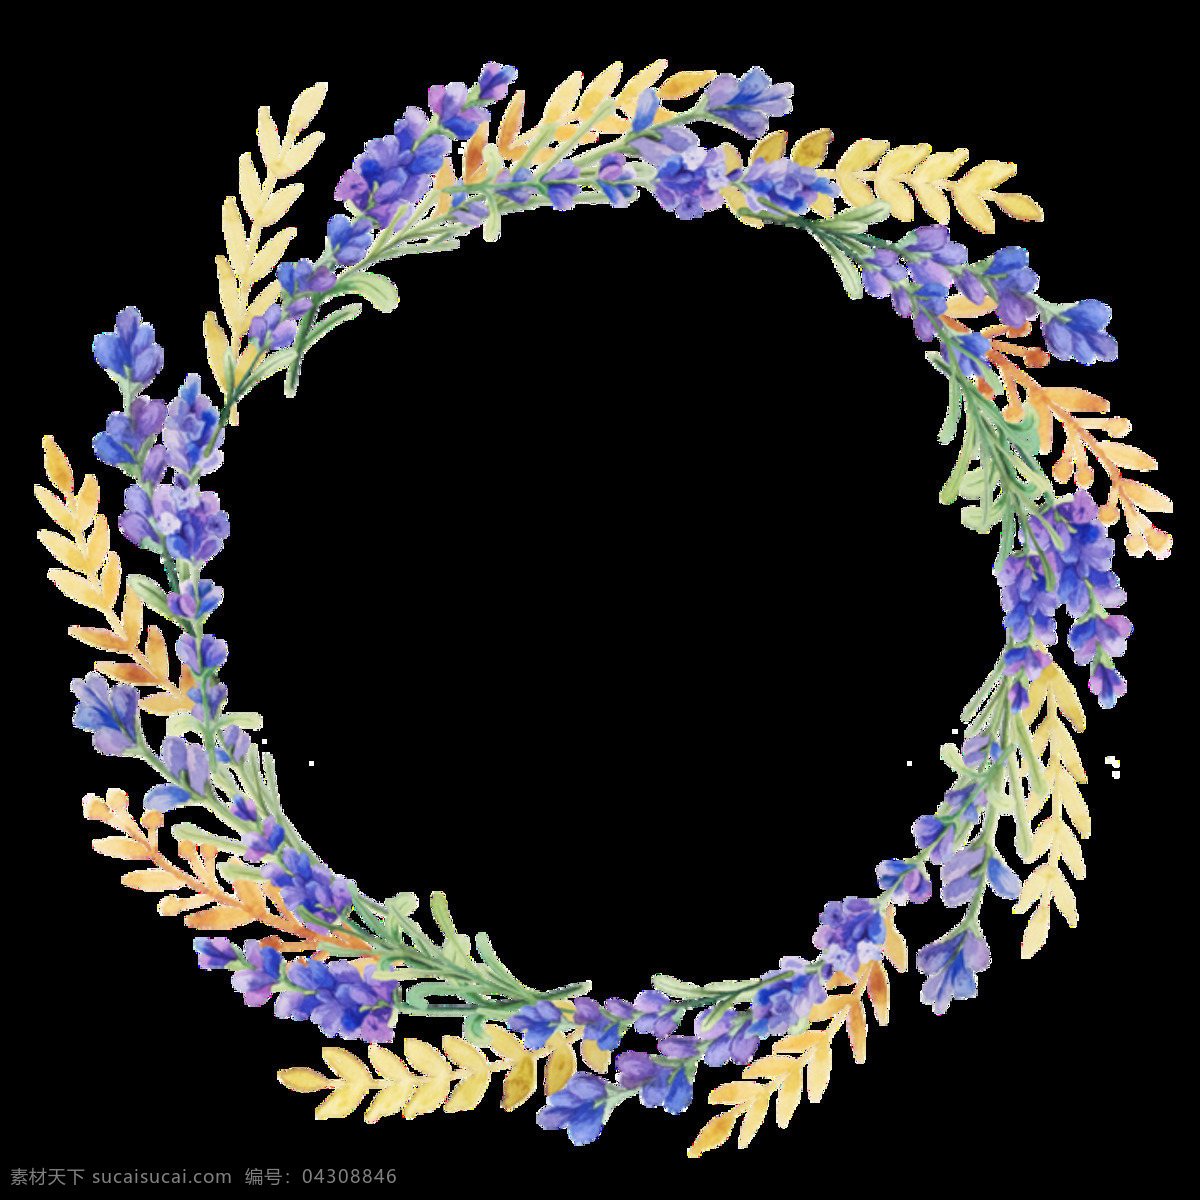 花环 黄色树枝 手绘 圆形手绘 装饰元素 紫色花朵 清新 文雅 装饰 元素